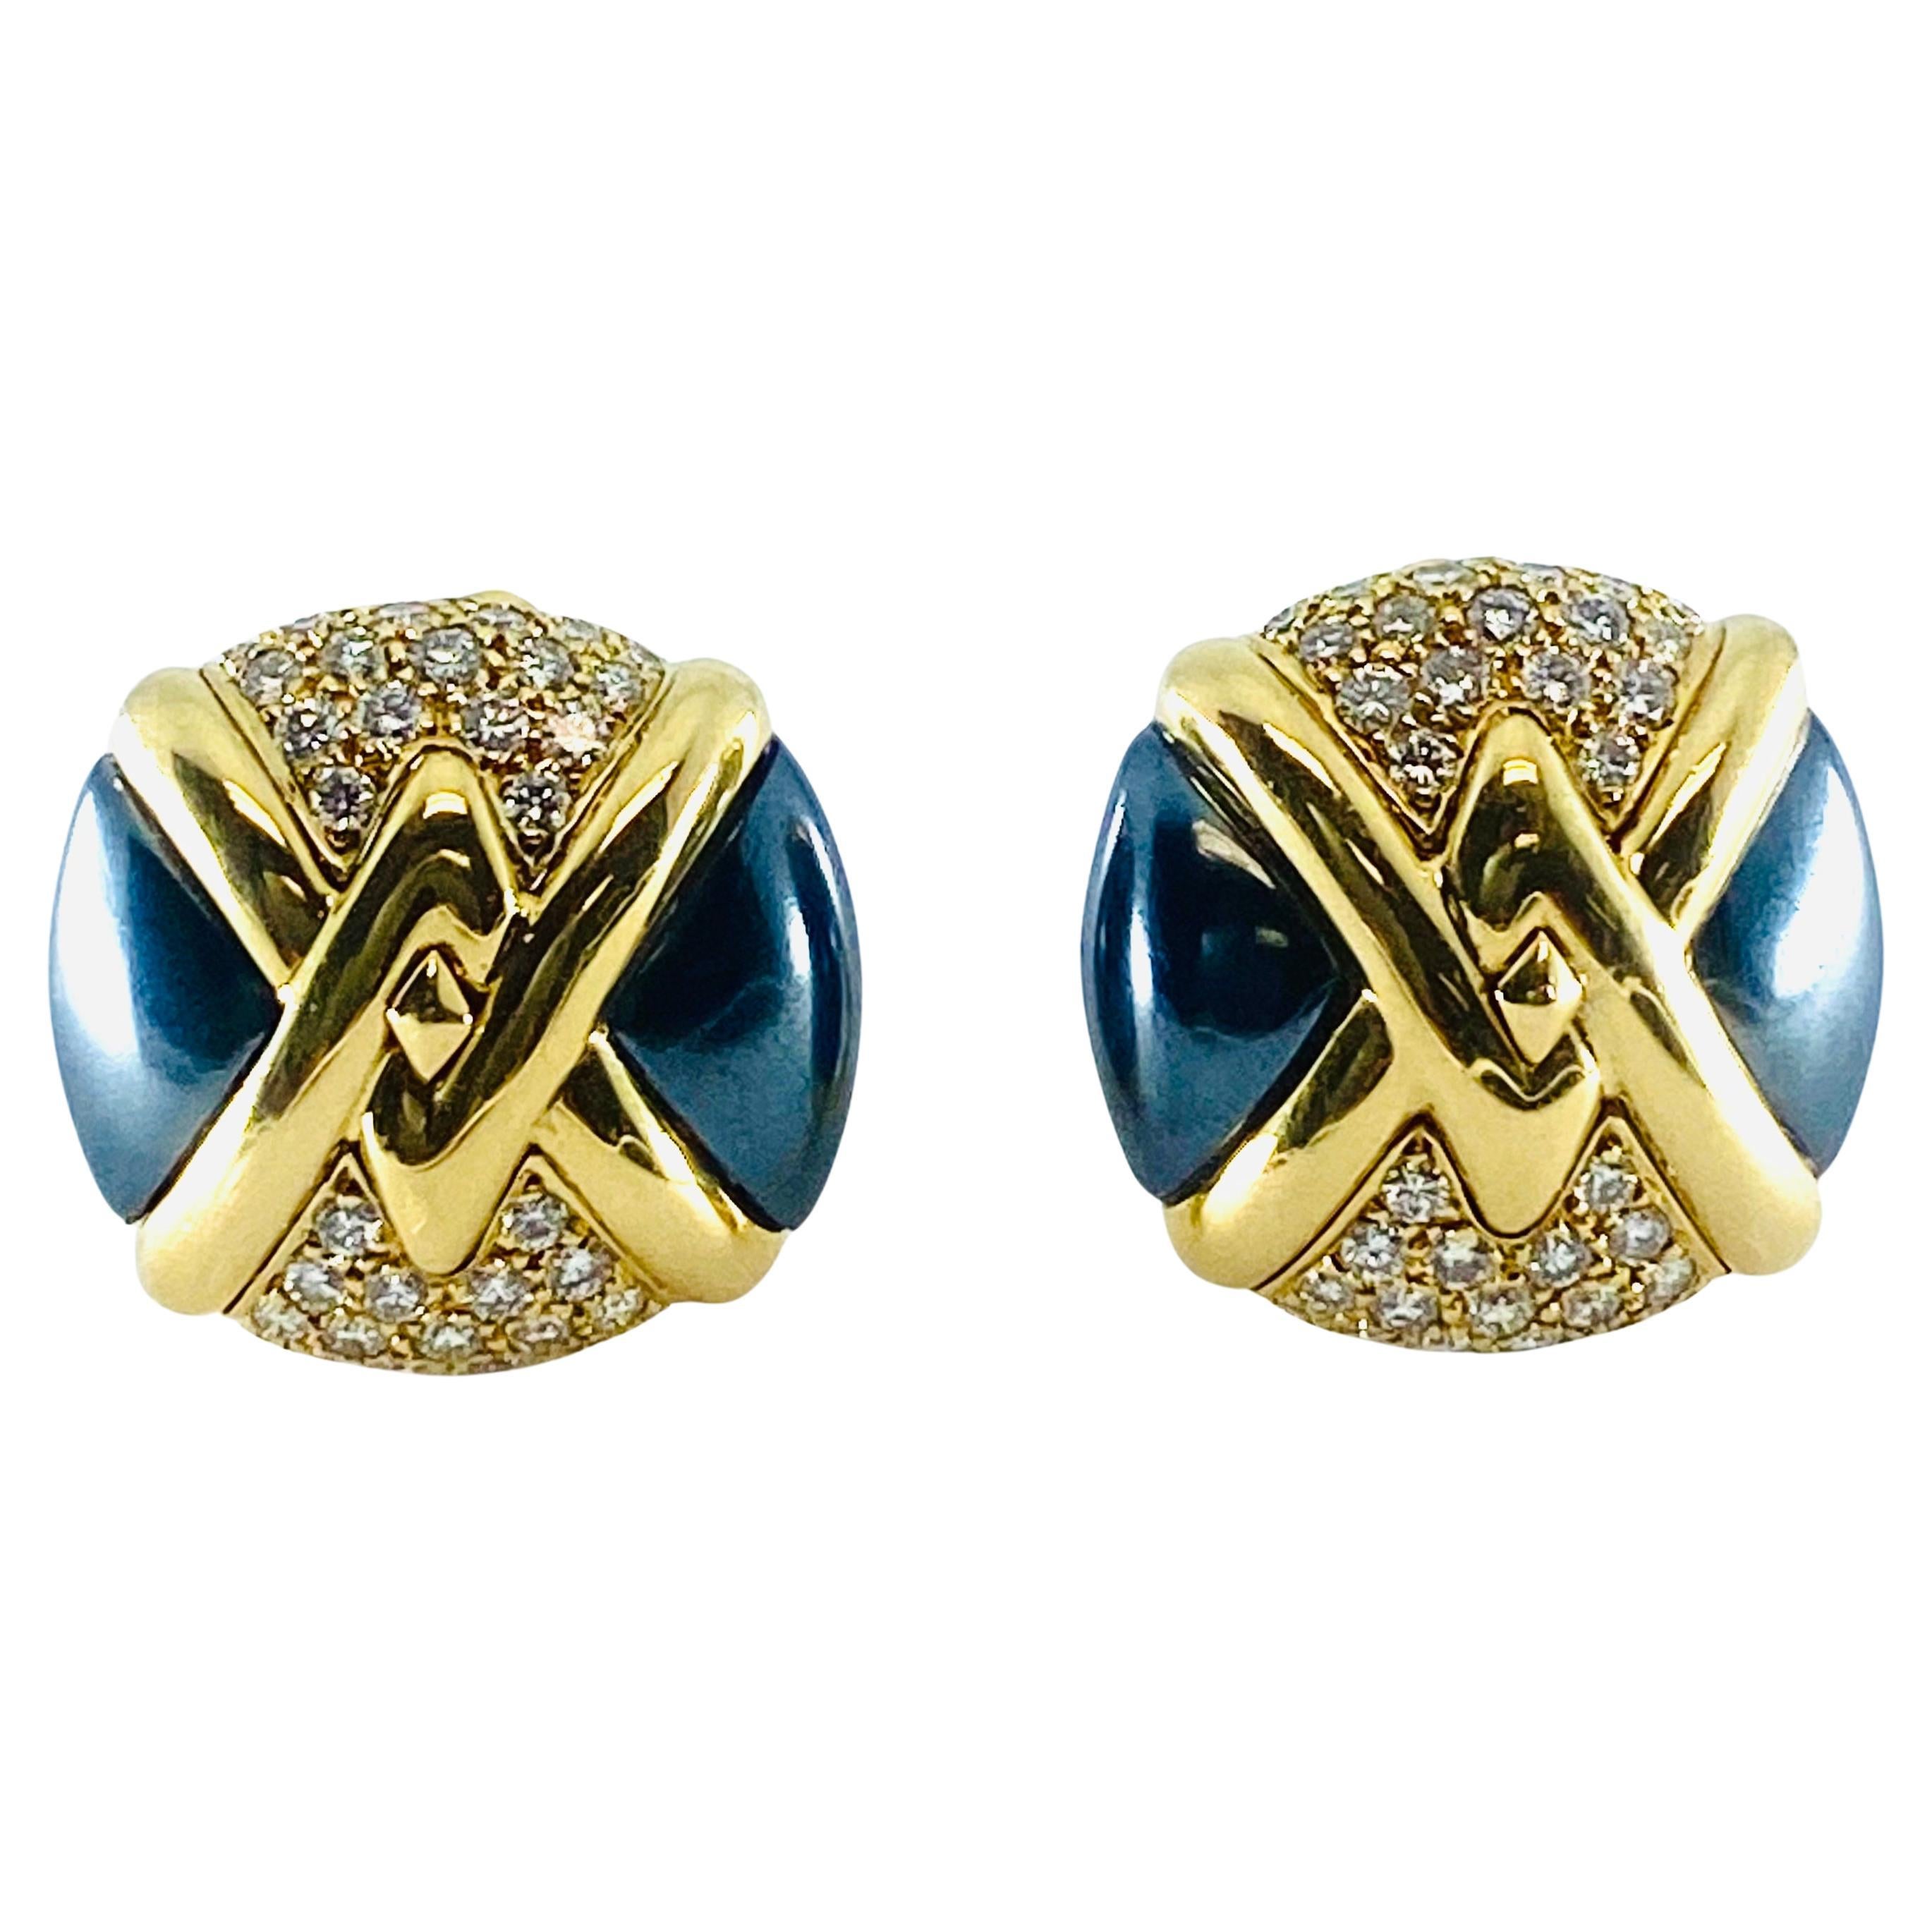  Bulgari Diamond Hematite 18K Gold Earrings  For Sale